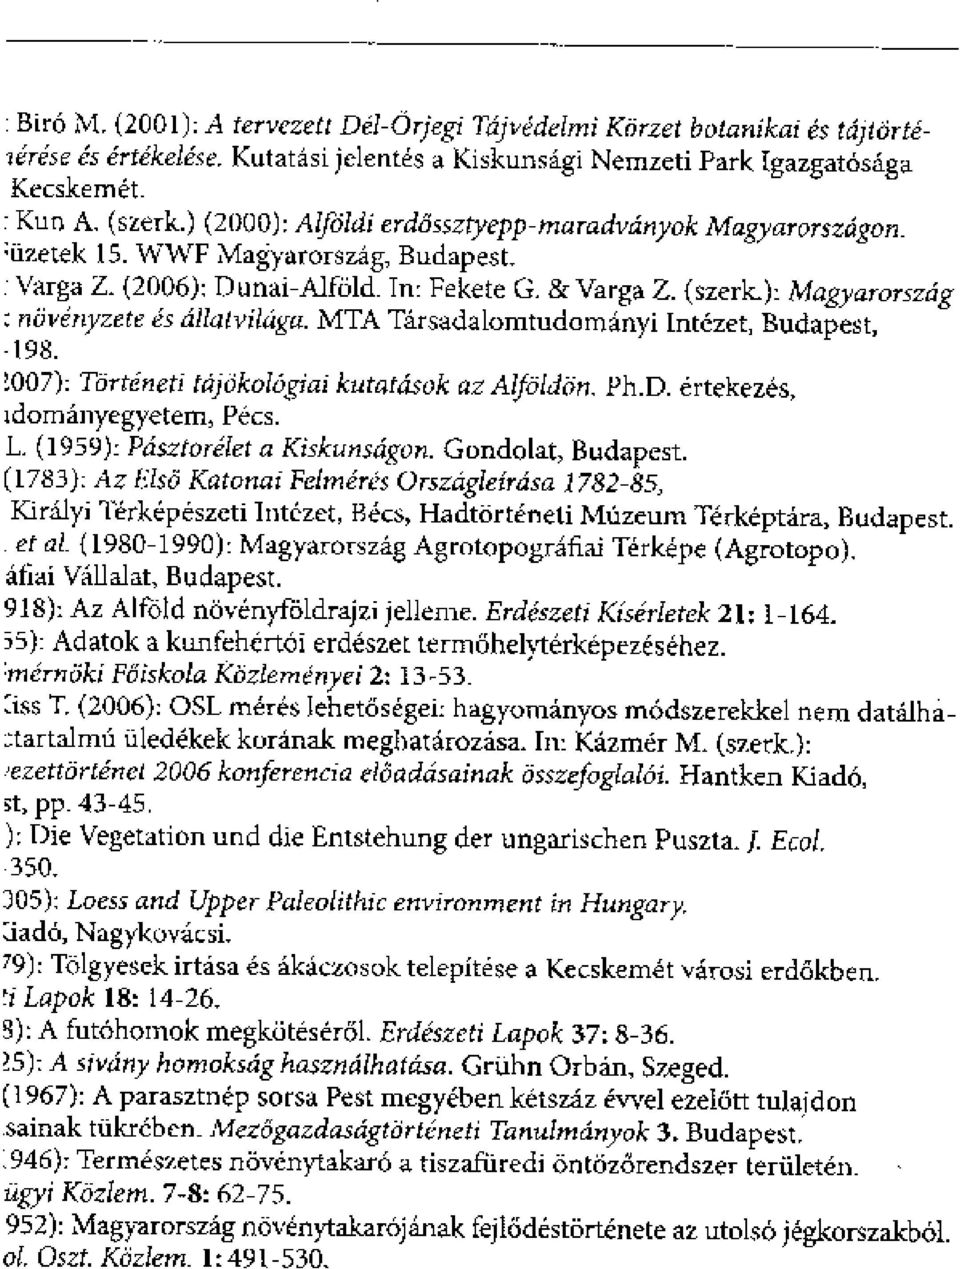 .): Magyarorszrig niivenyzete es atalvilaga. MT A Tarsadalomtudomanyi Intezet, Budapest, 198. Rirteneti tajokologiai kutat4i.colc Ition, Ph.D. ertekezes, idornanyegyetern, Pecs. L.